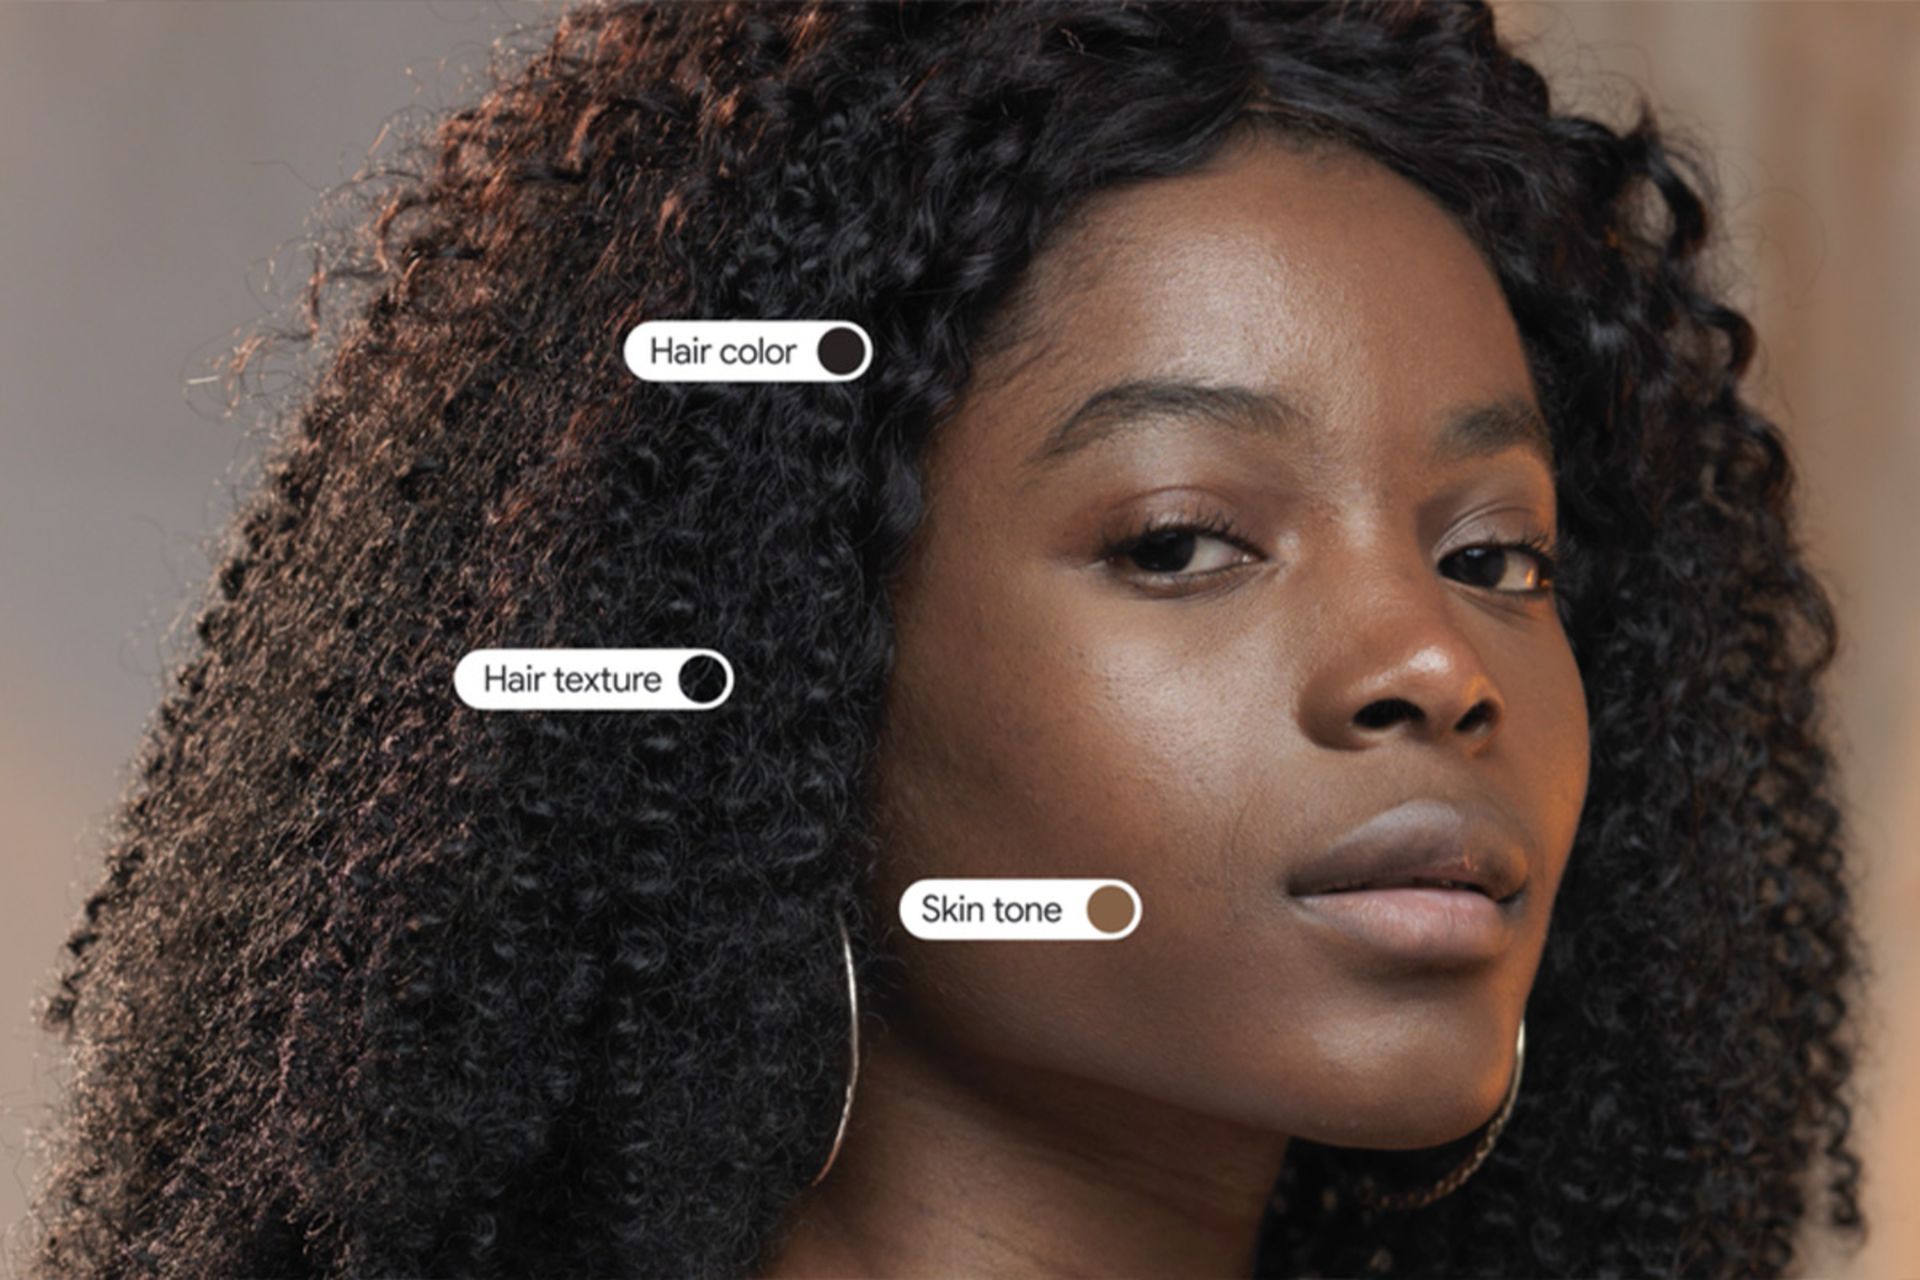 تشخیص هوشمند رنگ پوست و رنگ و بافت موها توسط گوگل